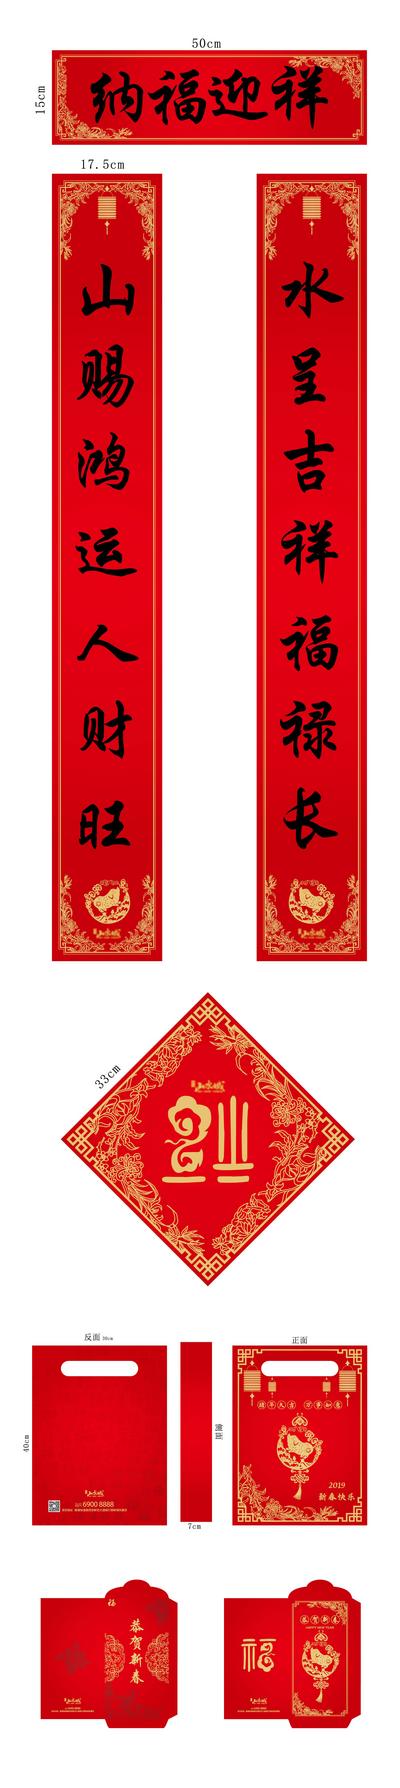 南门网 对联 红包 春节 中国传统节日 地产 春联 福字 手提袋 新春 红金 